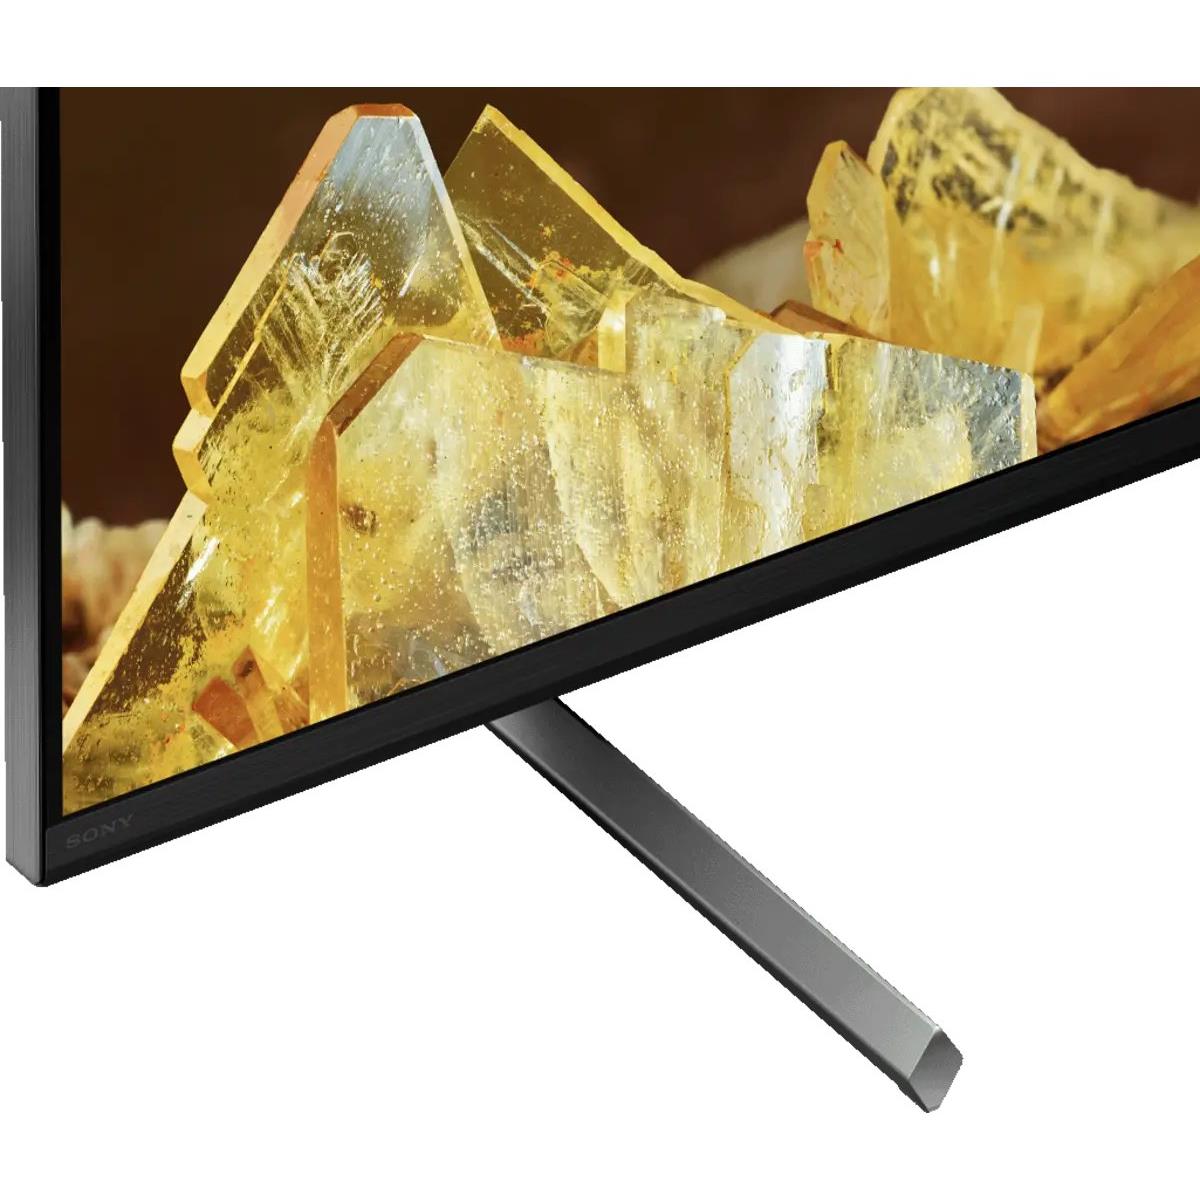 Sony XR85X90L 85&quot; LED Television BRAVIA XR X90L 4K UHD Smart Google TV - Sony-XR85X90L